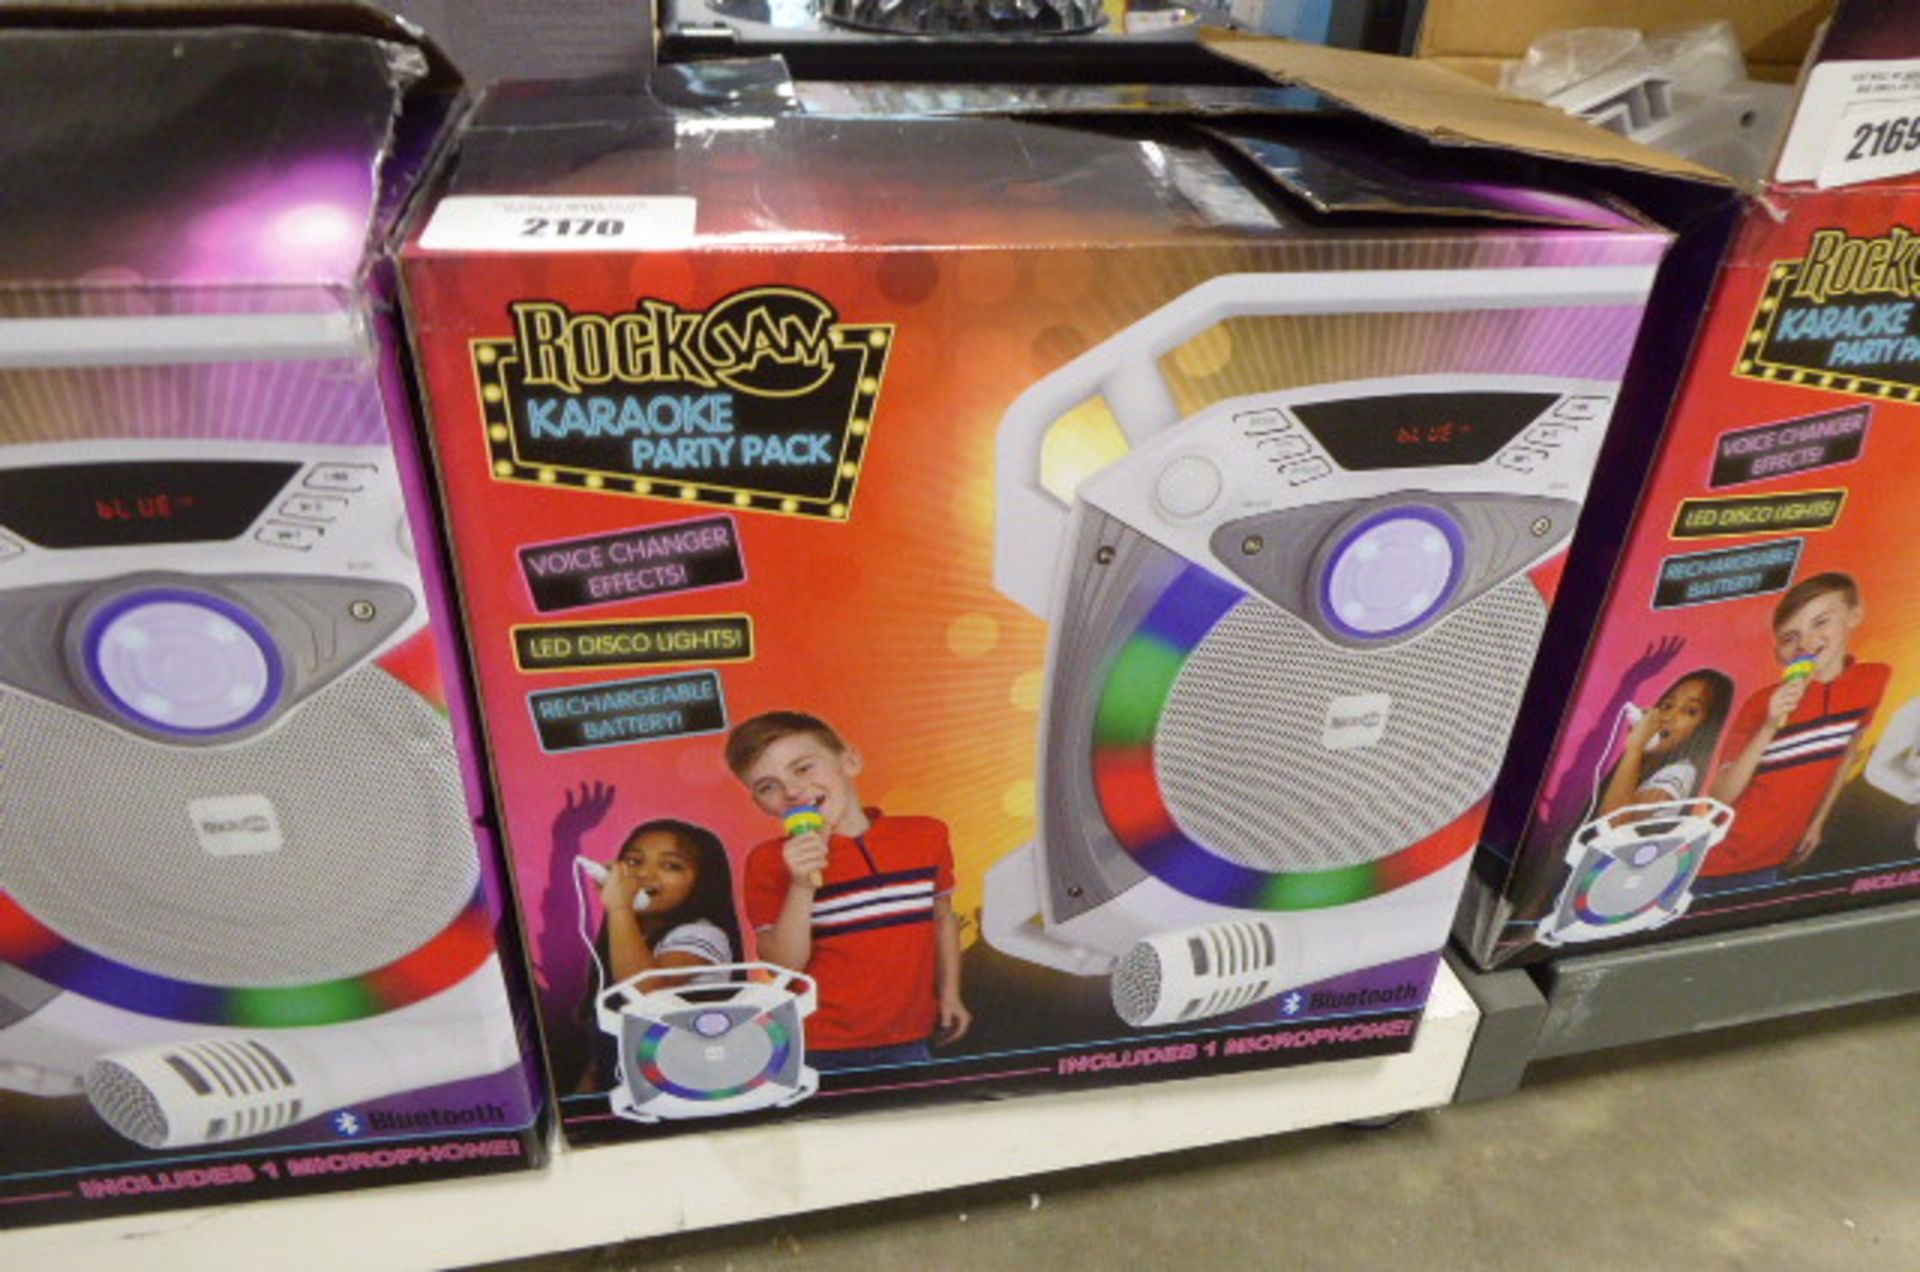 A Rockjam karaoke party pack speaker in box